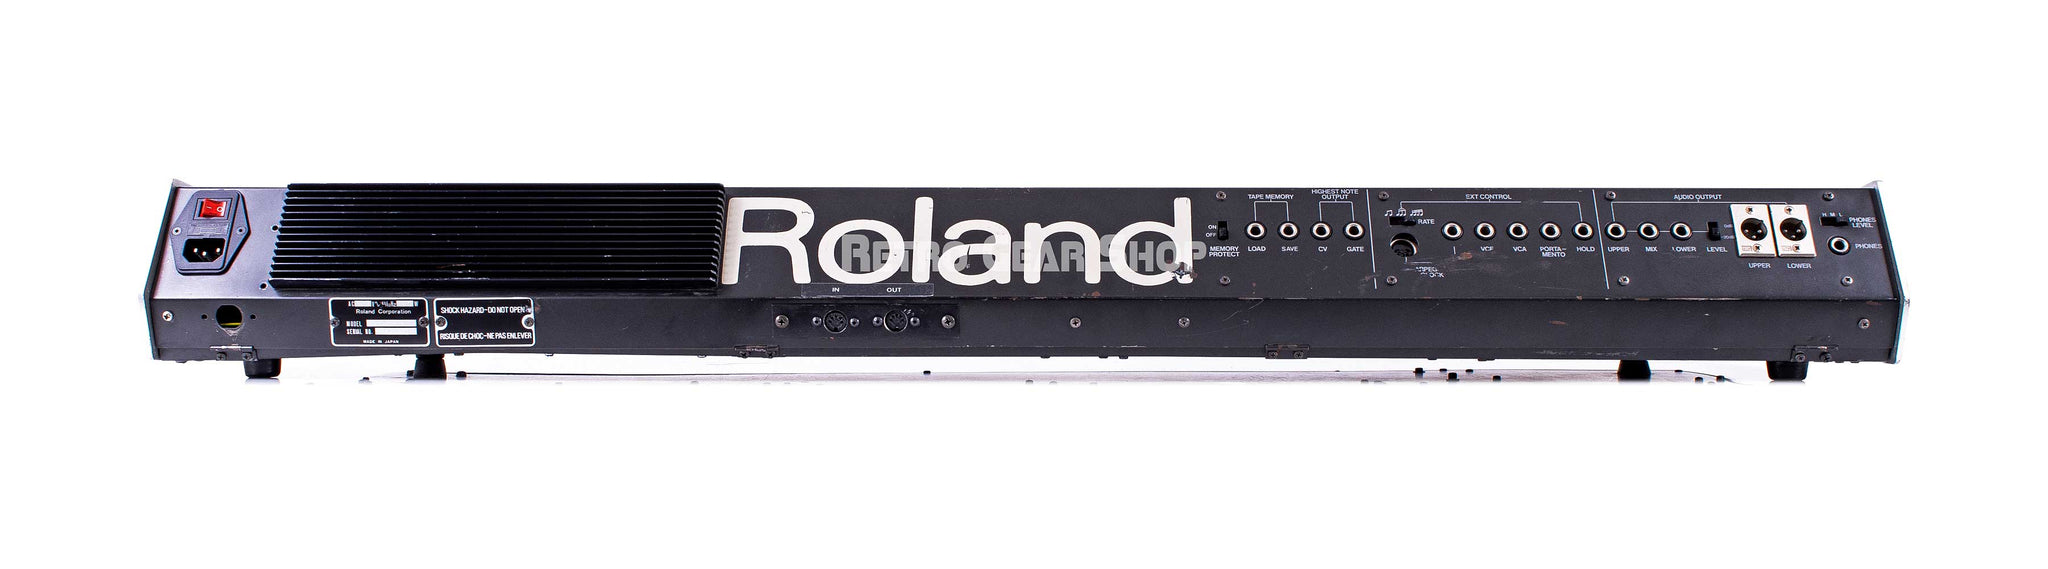 Roland Jupiter-8 Rear